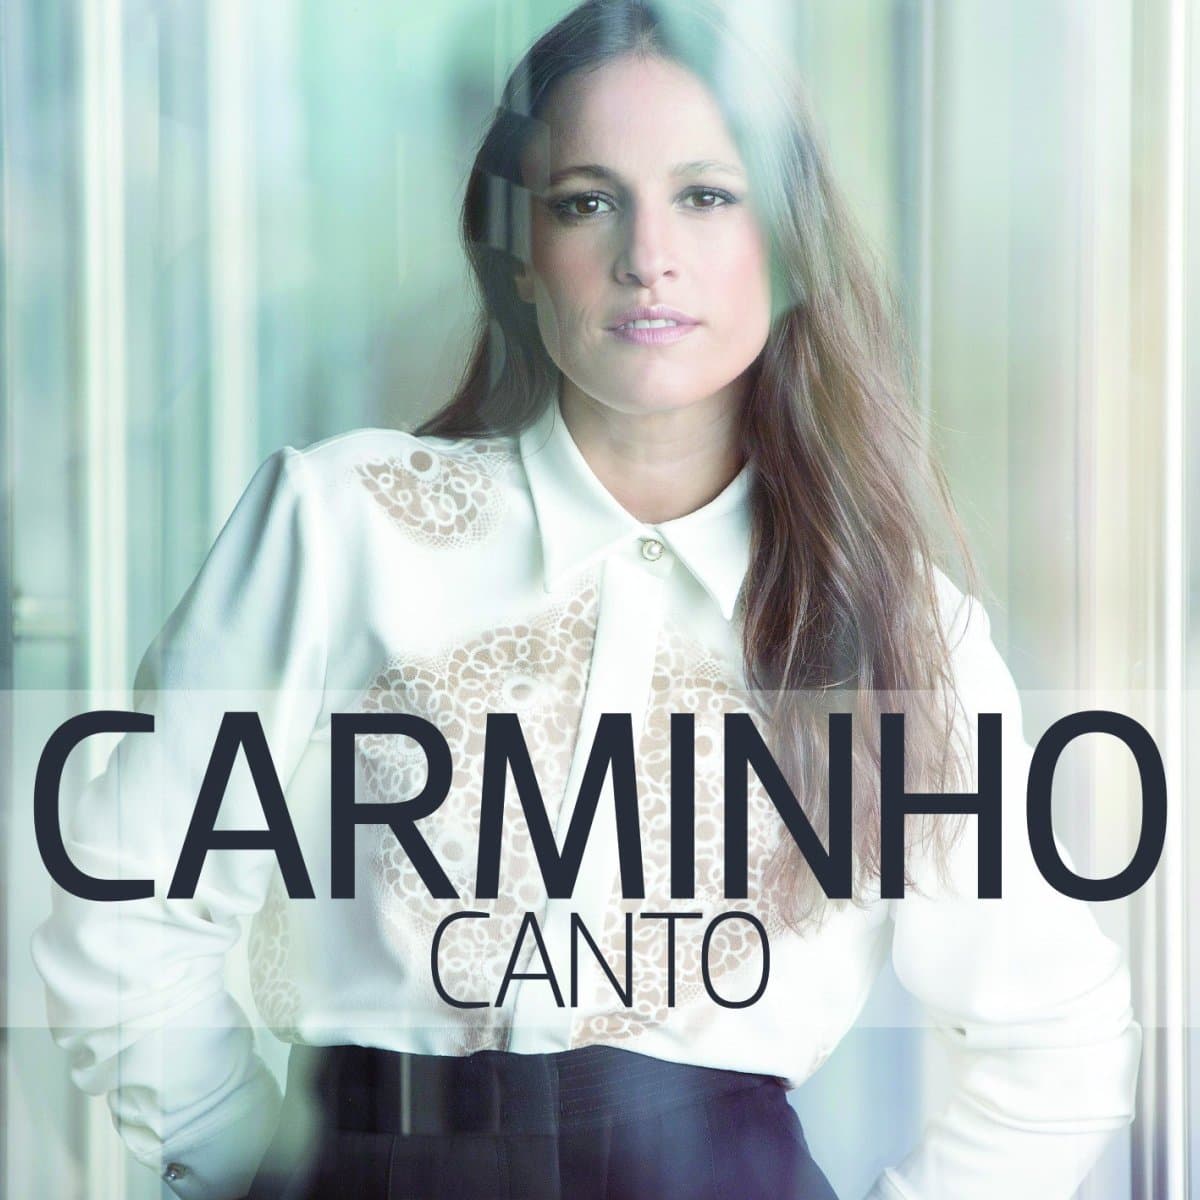 Carminho, Fado-CD Canto und Carminho Tour 2015